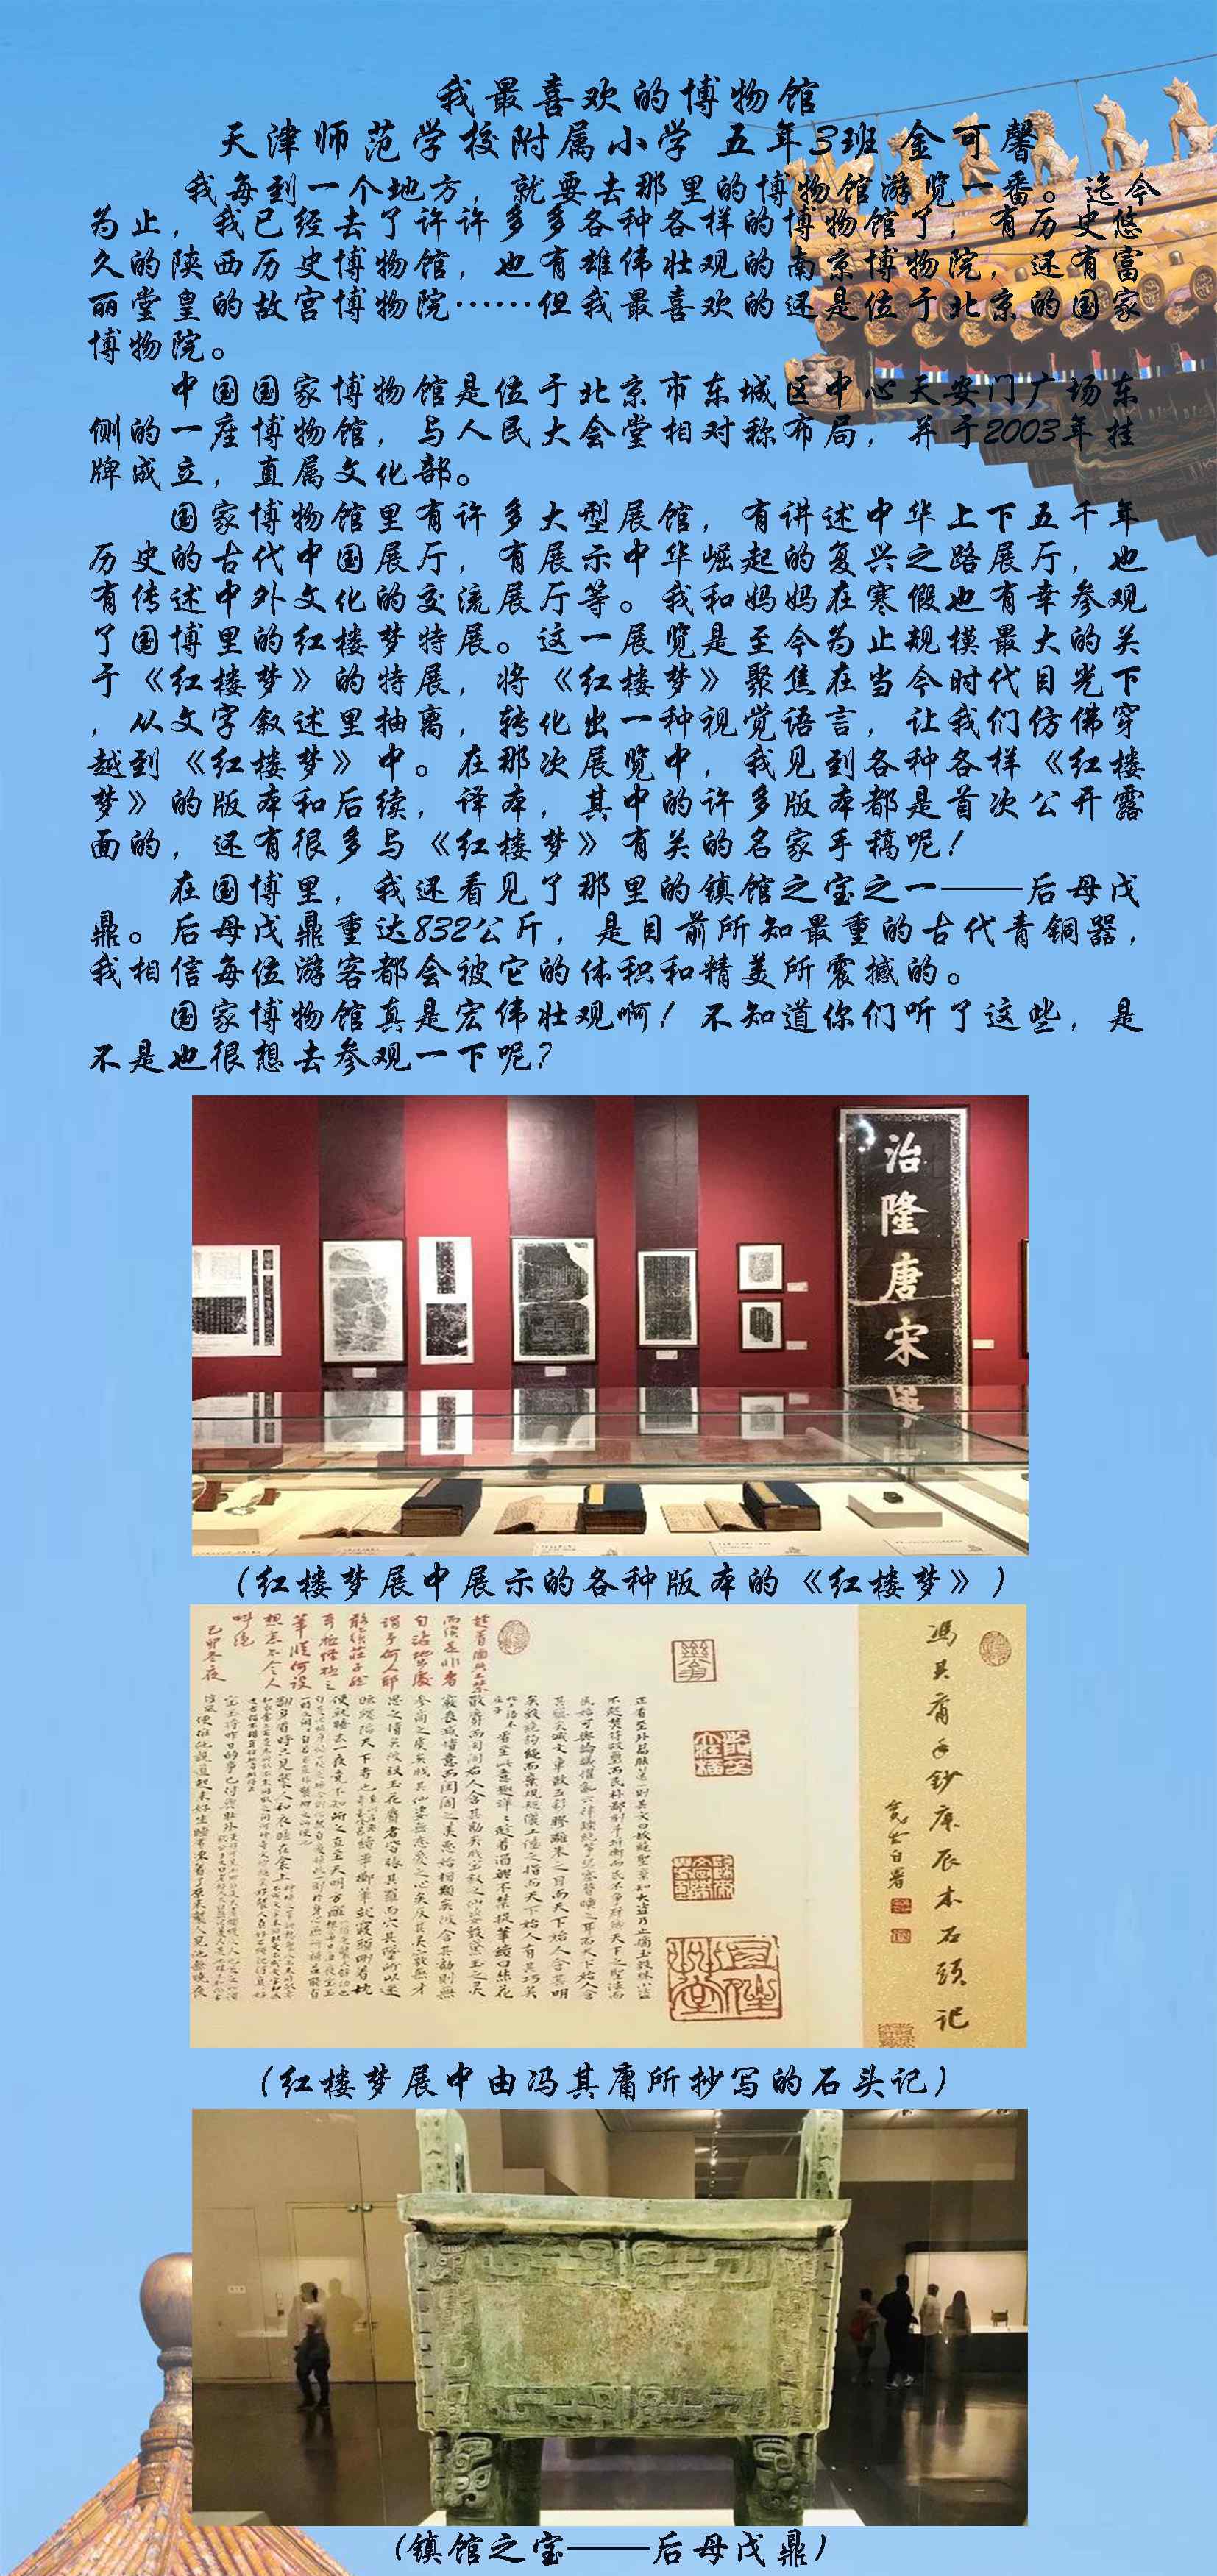 刘澈 云游博物馆——“我最喜欢的博物馆”主题诗歌、征文作品展